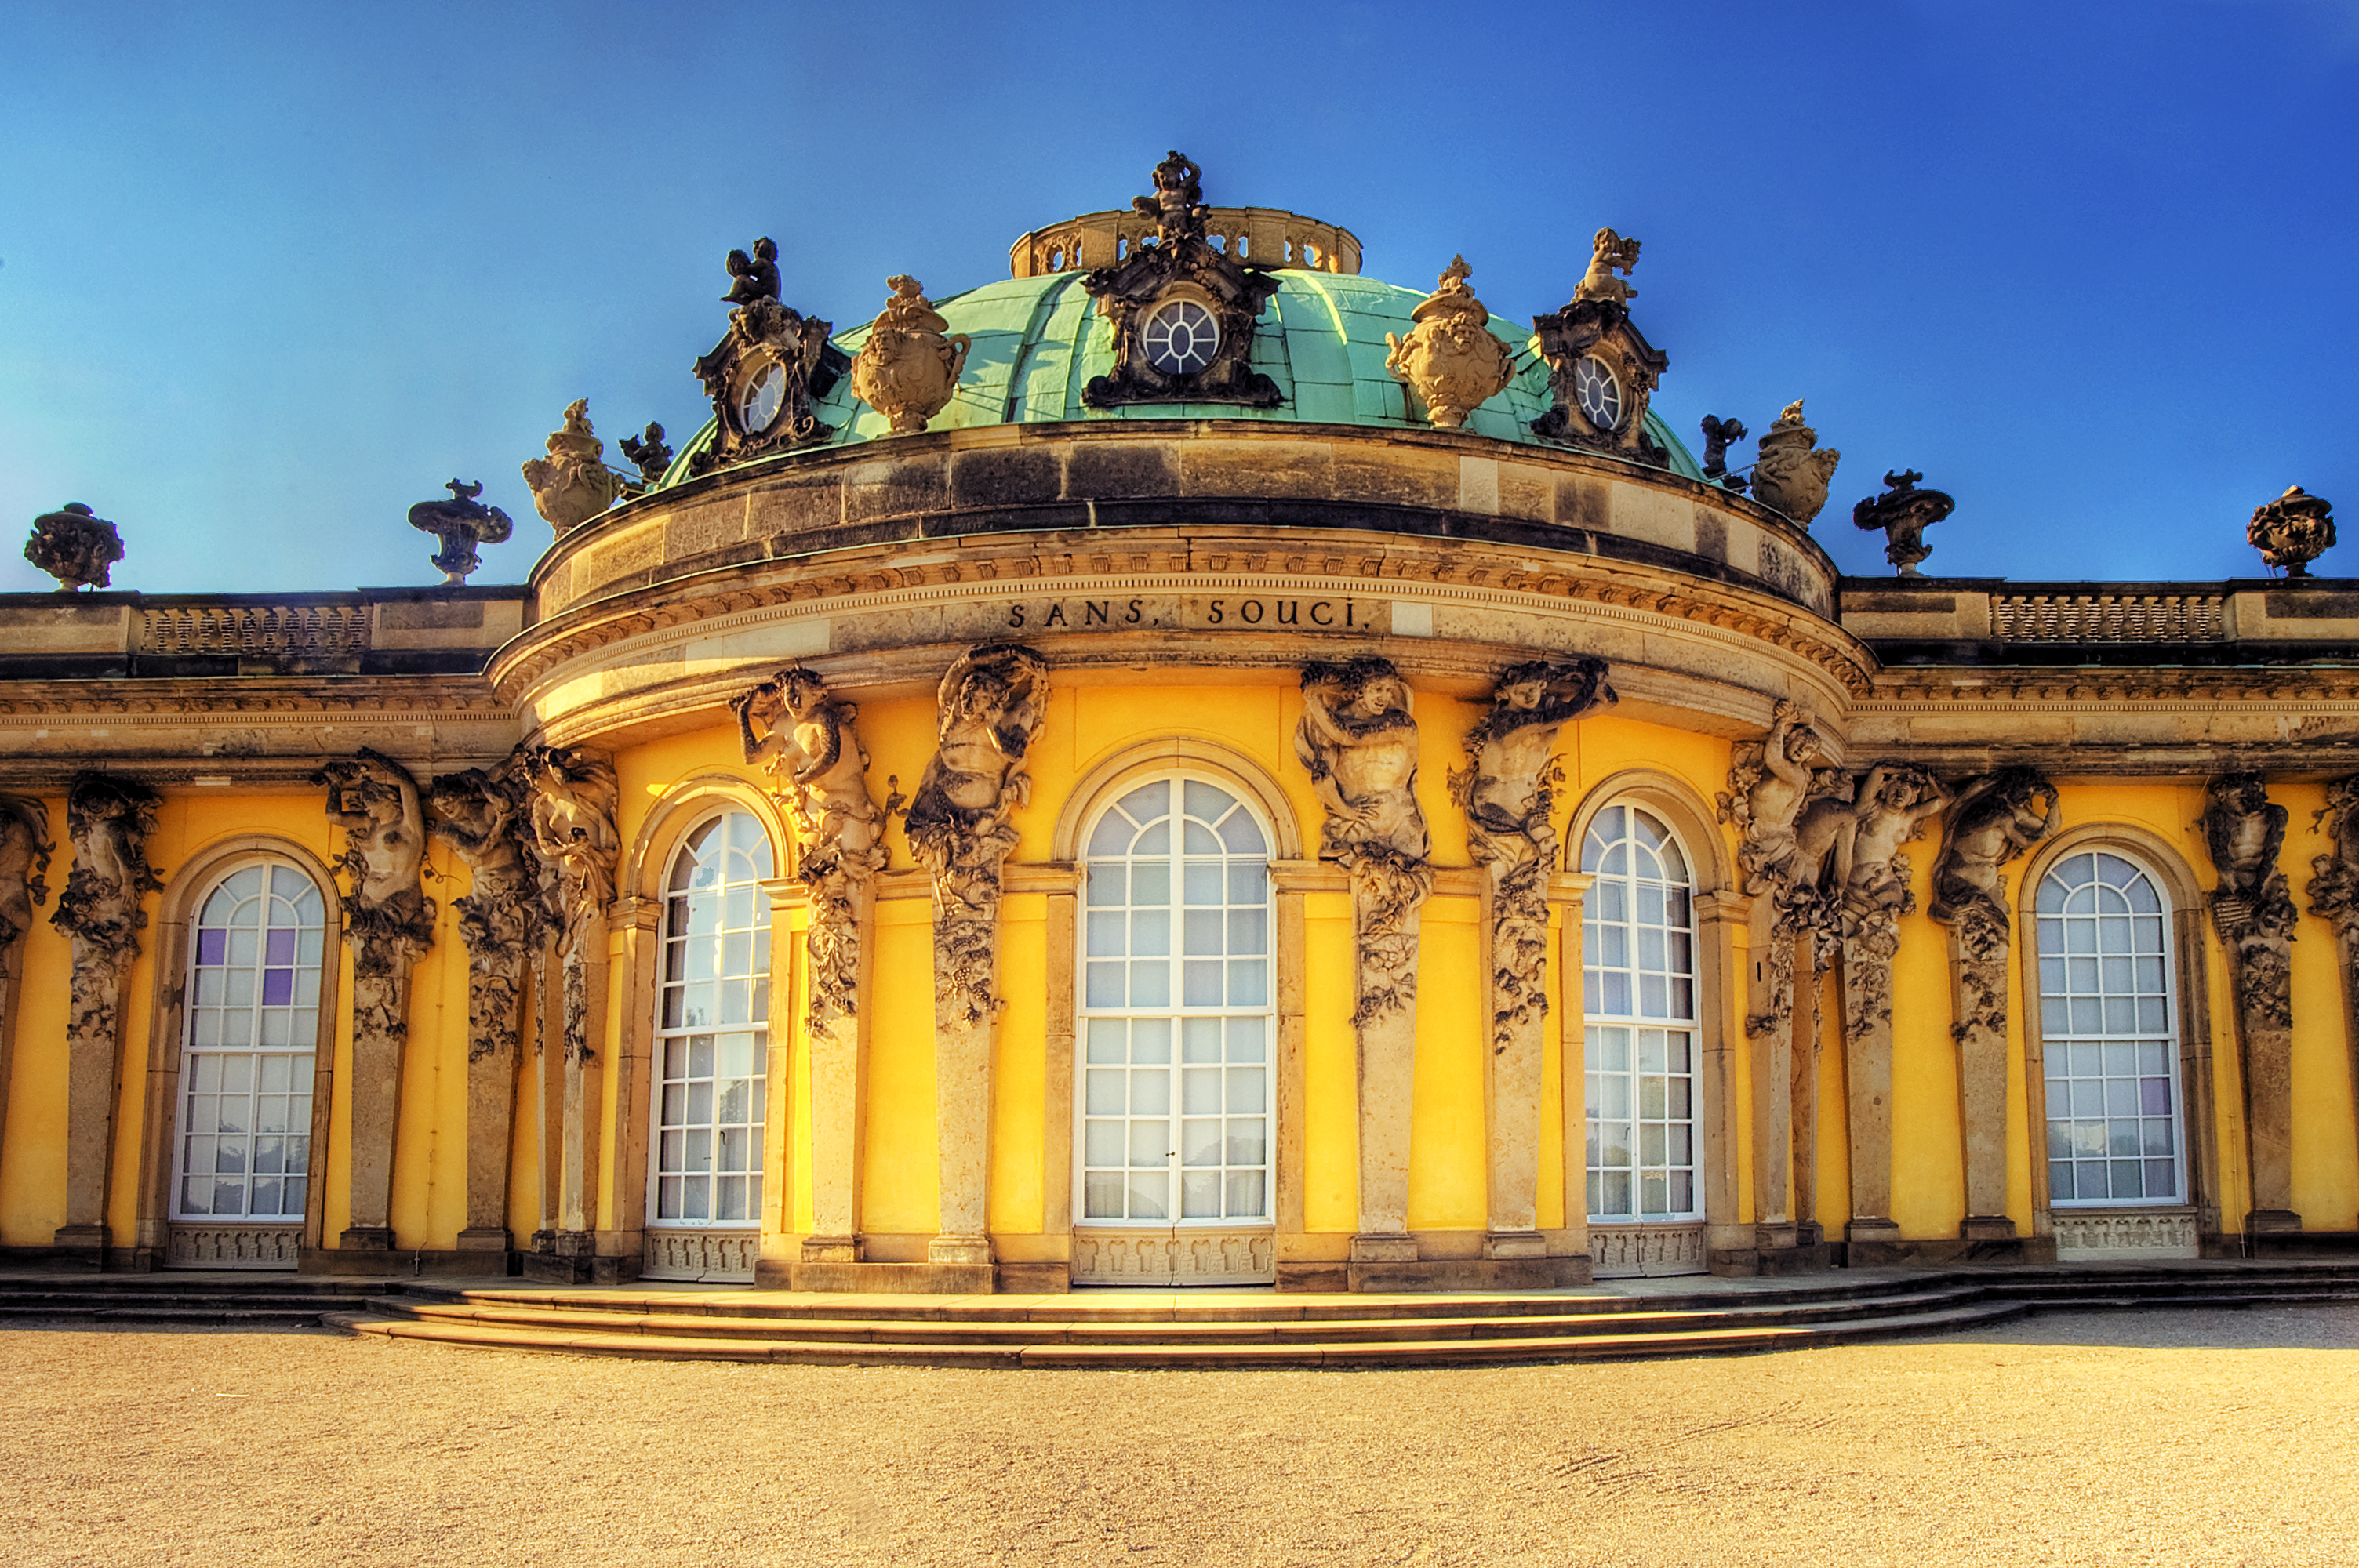 Potsdam Sanssouci Palace | Flickr - Photo Sharing!